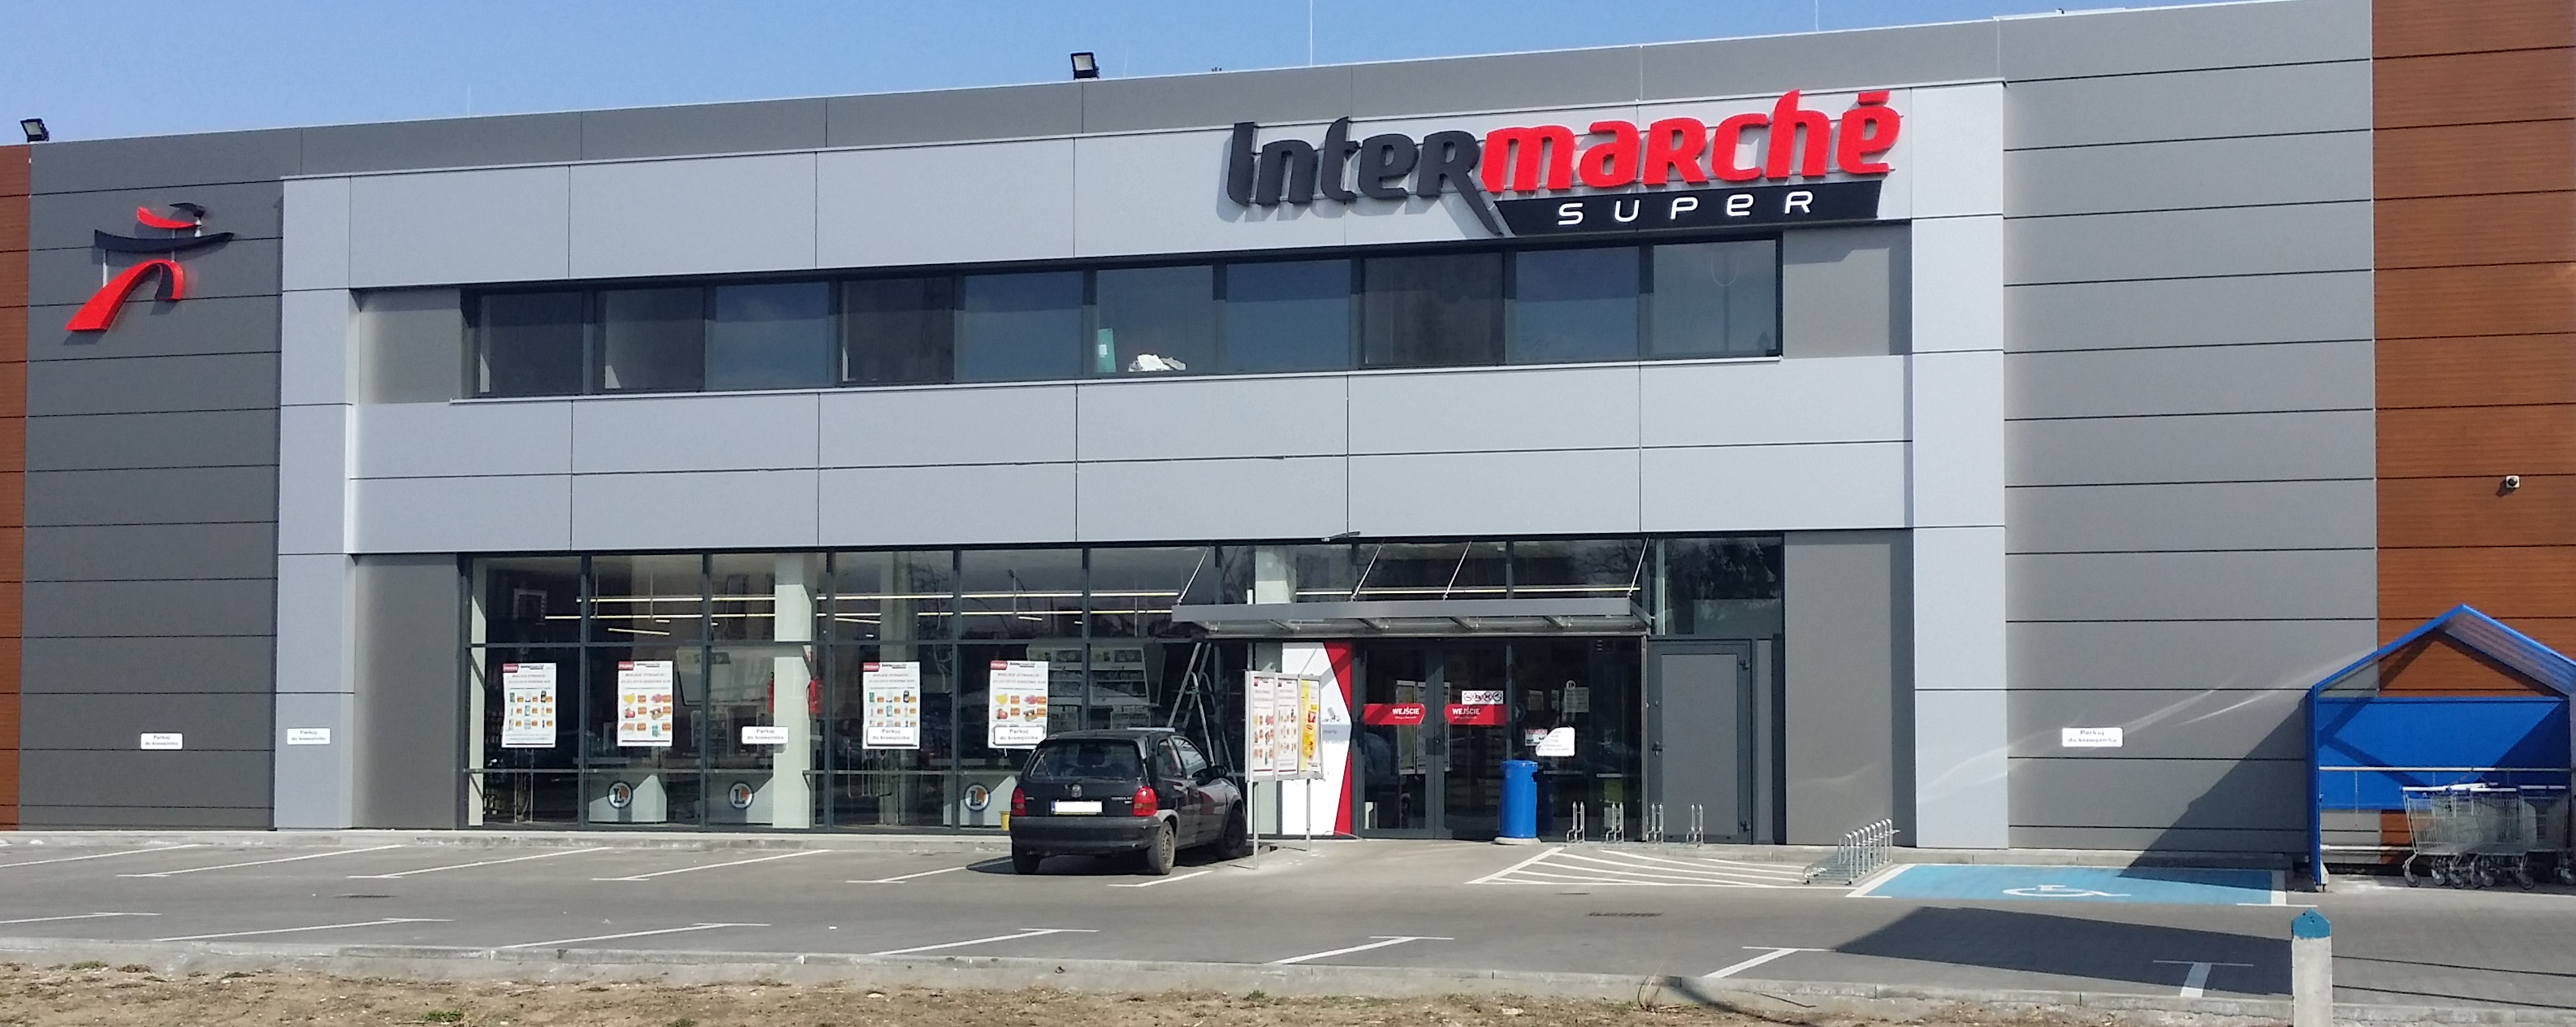 Kolejny supermarket w Tarnowie zmienia szyld na Intermarché